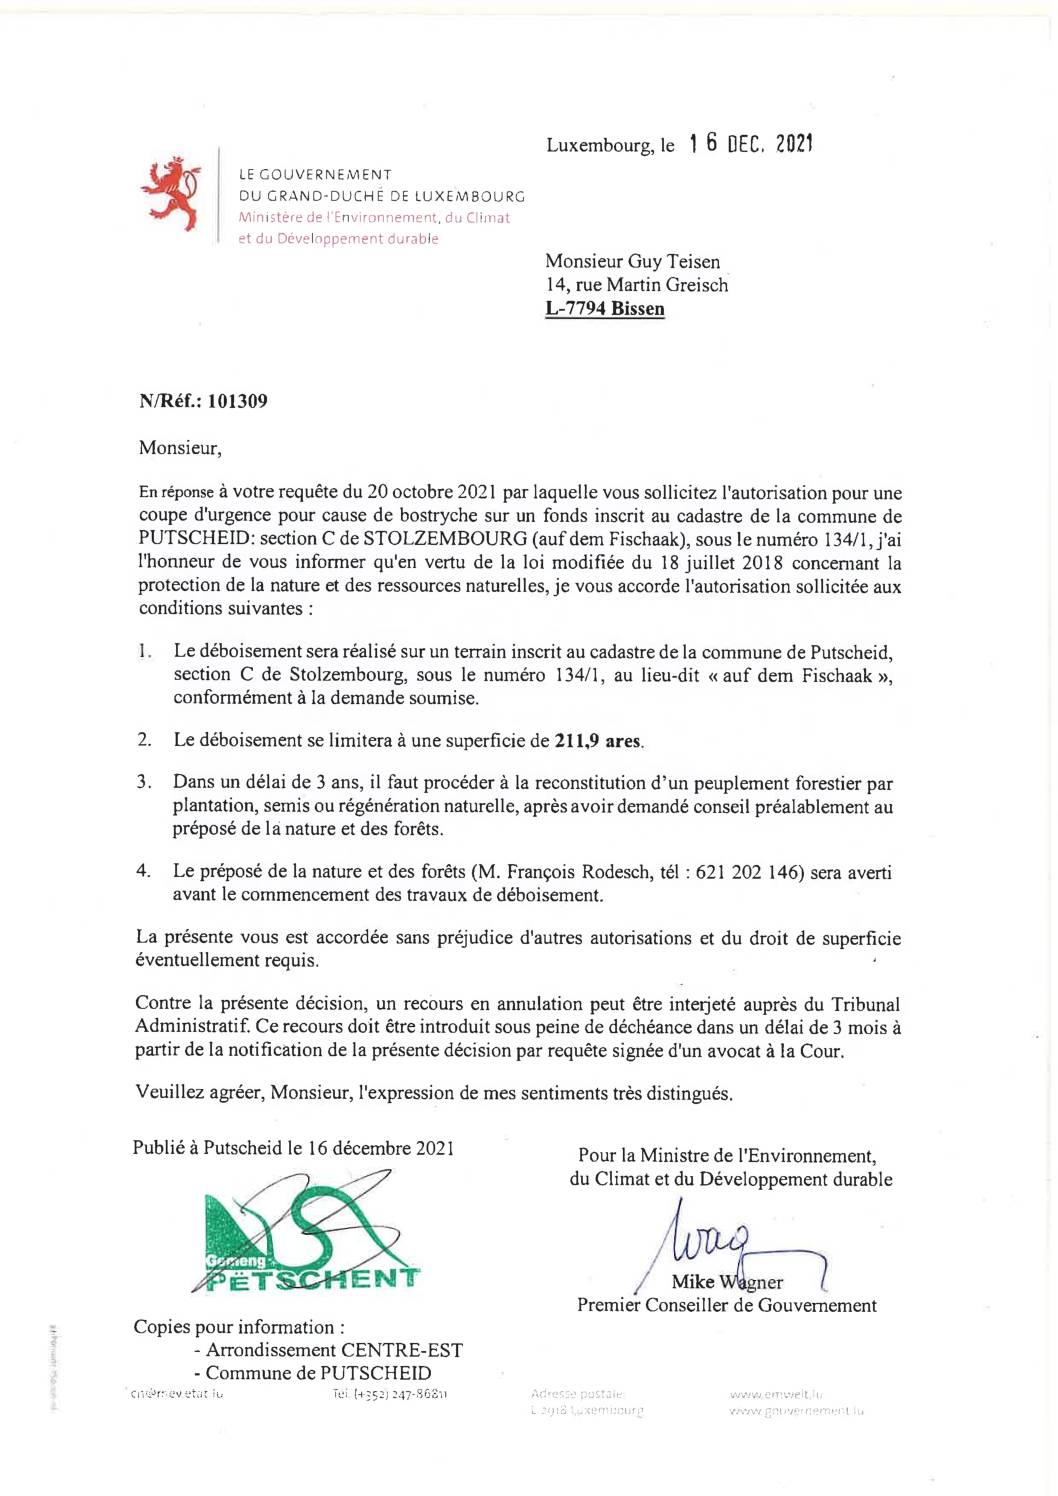 Notification de decision_Coupe d'urgence_Stolzembourg_Teisen